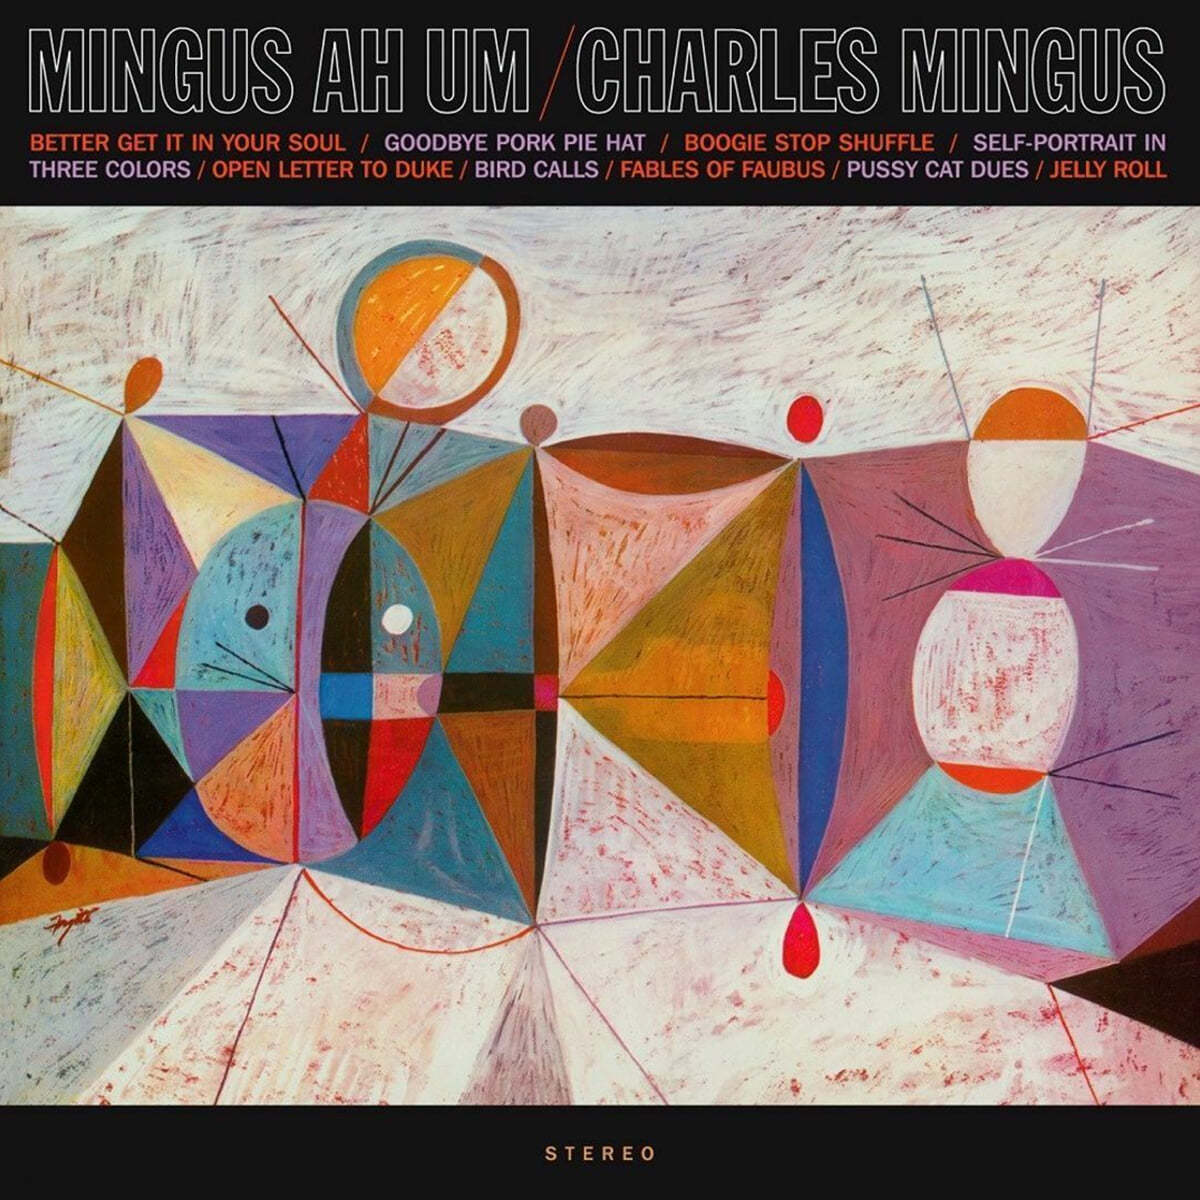 Charles Mingus - Mingus Ah Um [LP]